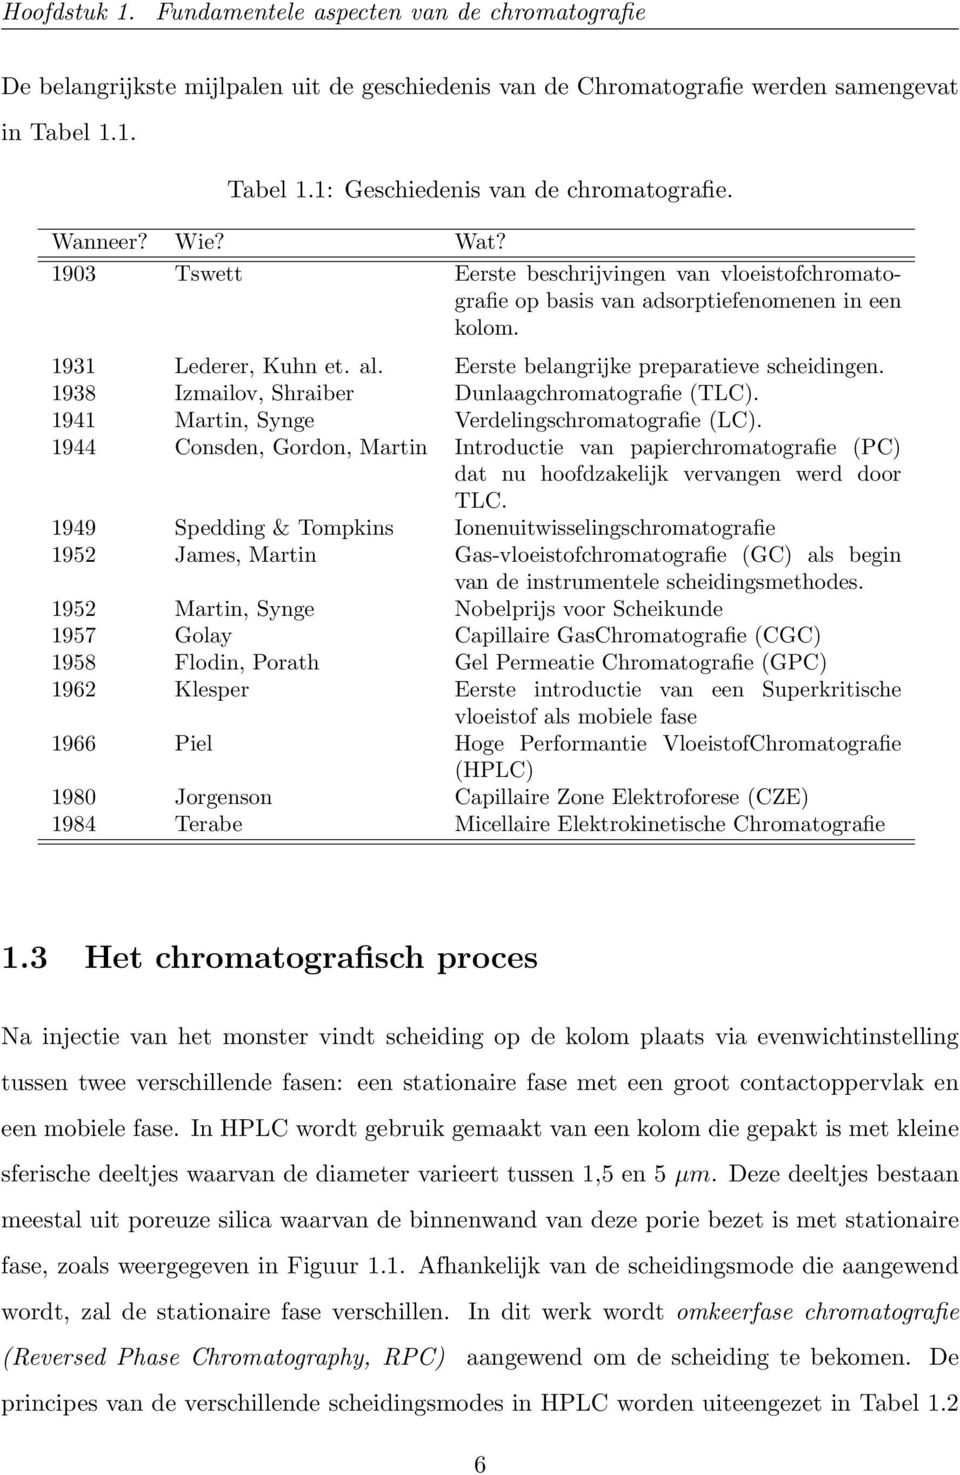 1938 Izmailov, Shraiber Dunlaagchromatografie (TLC). 1941 Martin, Synge Verdelingschromatografie (LC).